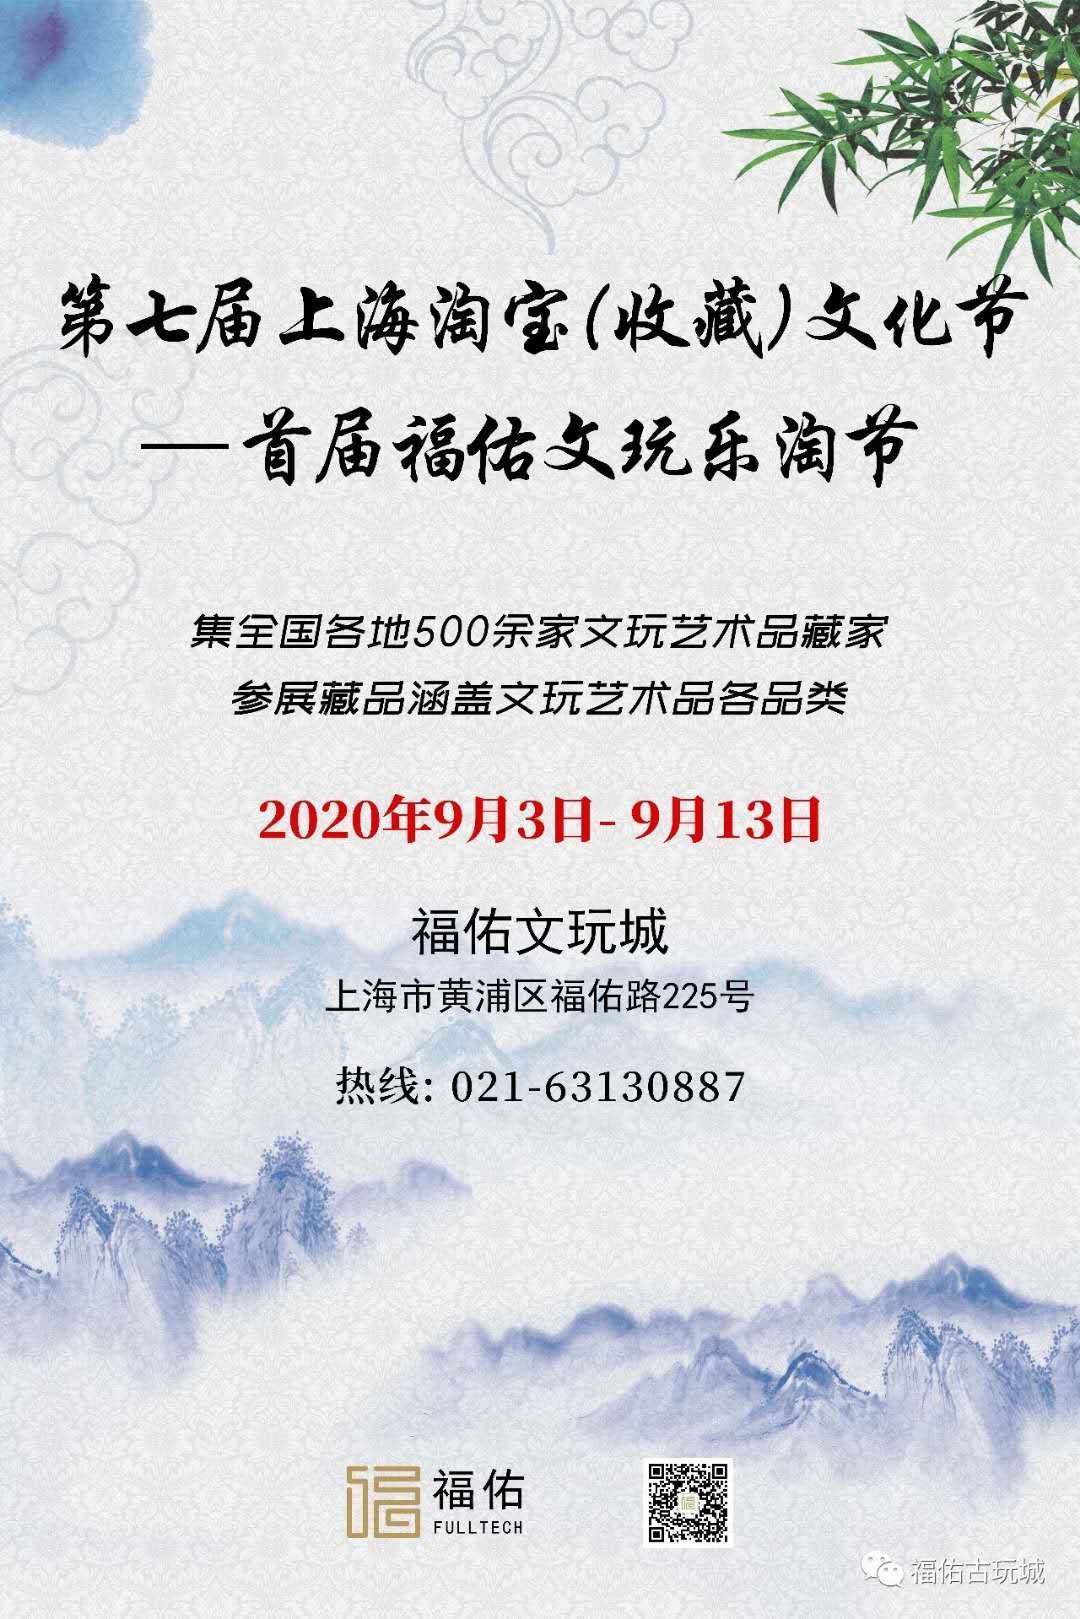 上海福佑文玩城9.3-9.13 上海淘宝文化节